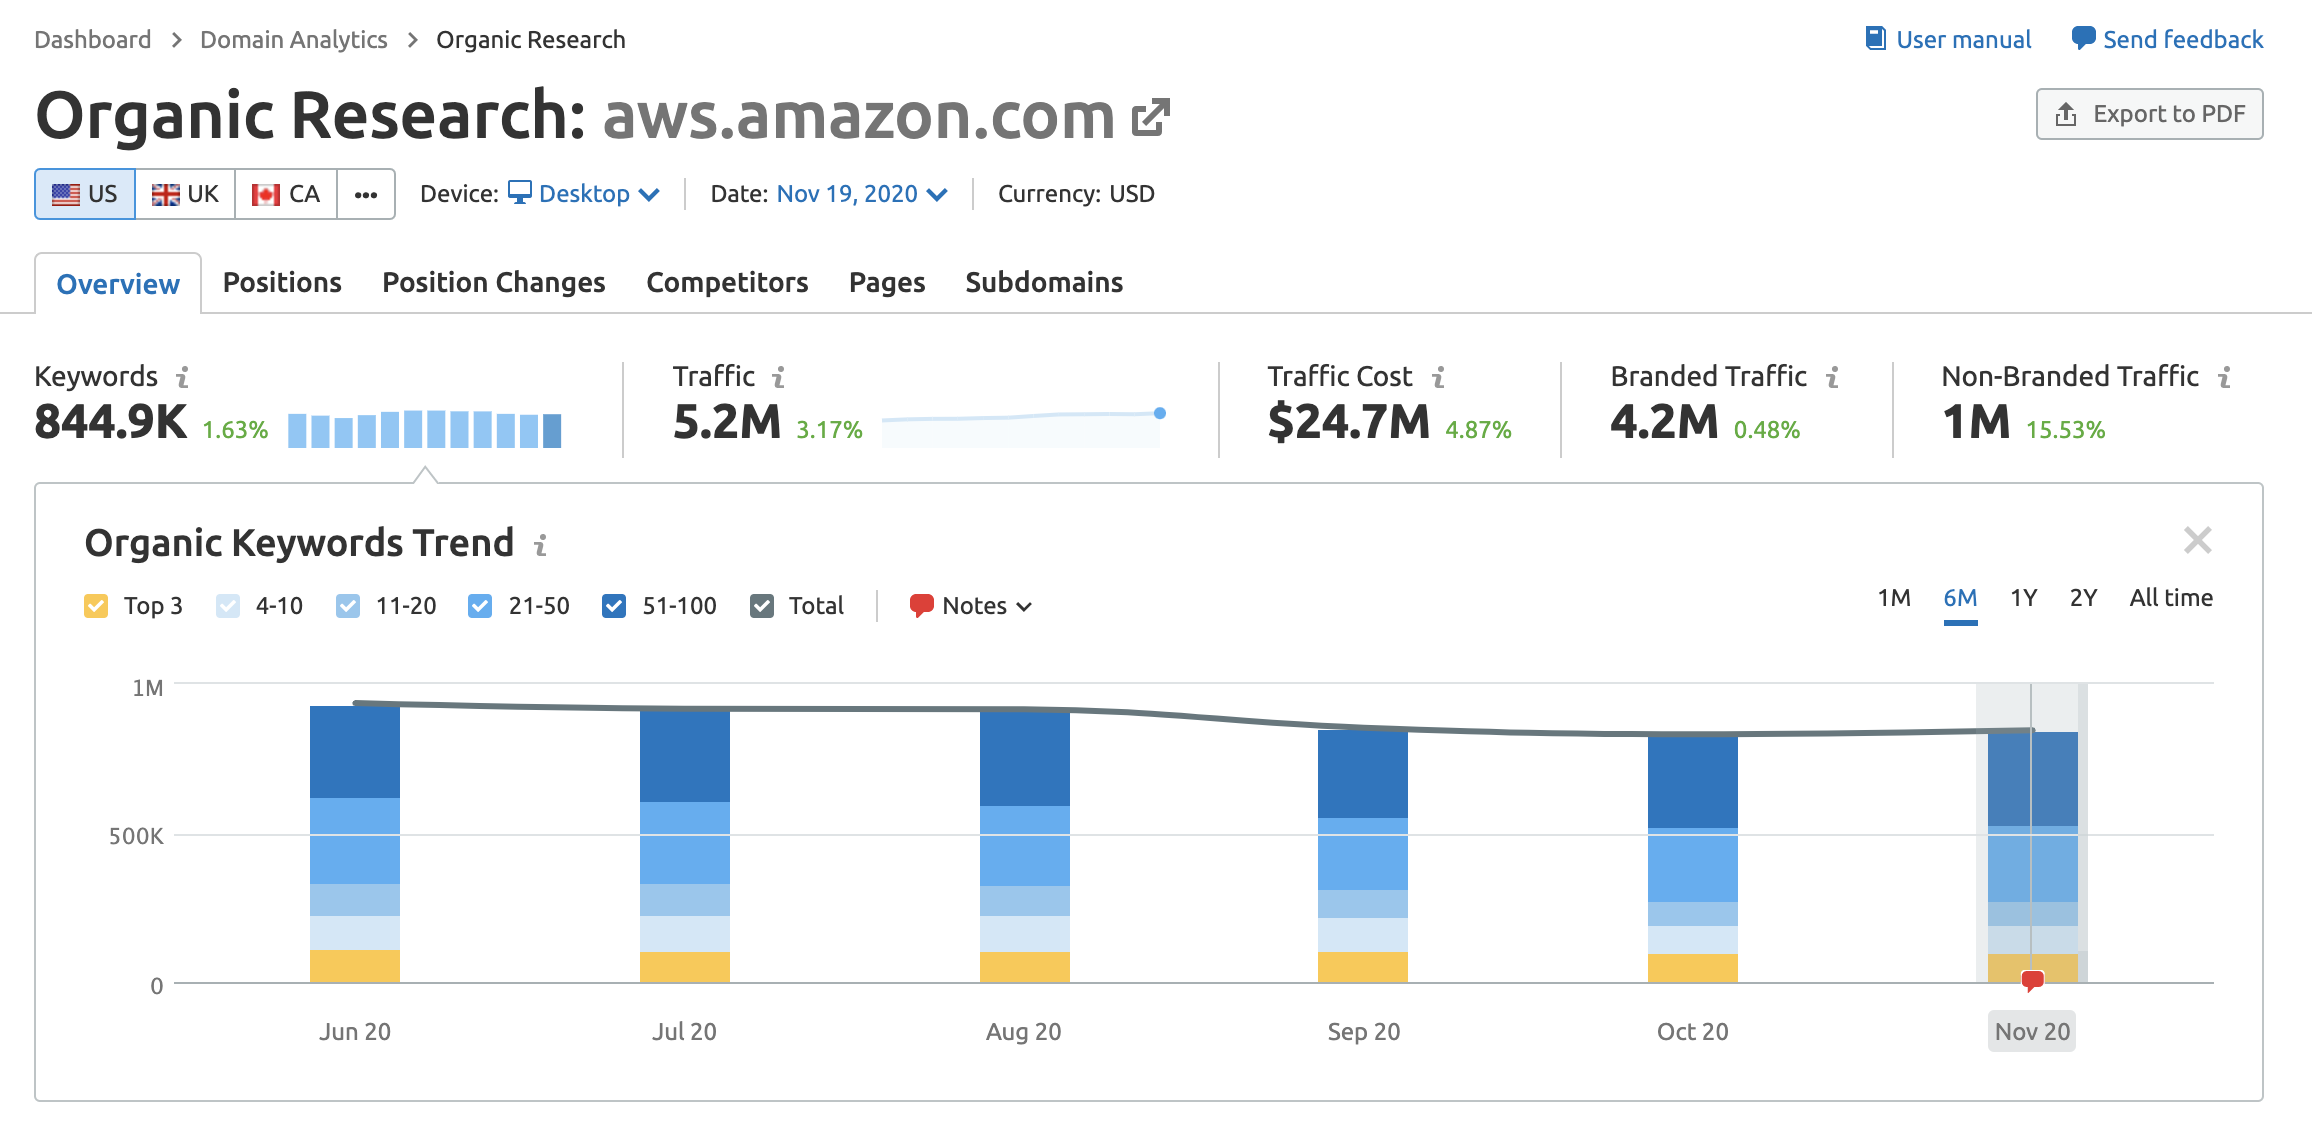 Amazon AWS subdomain data